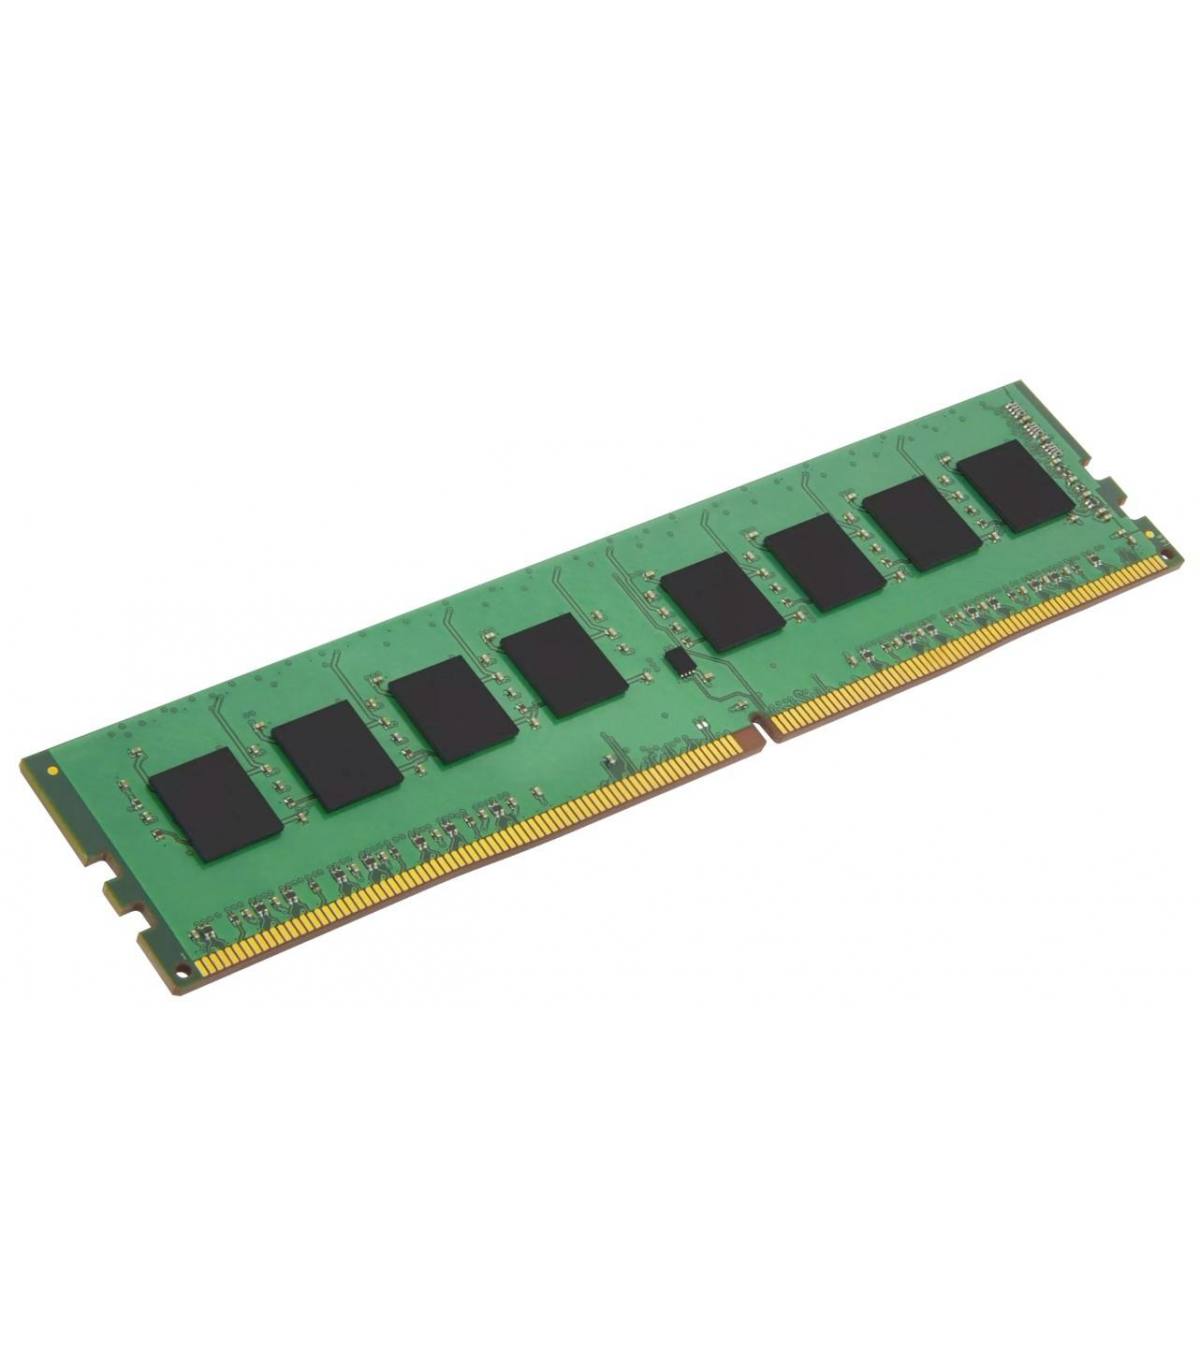 RAM MICRON/IBM 4GB 1Rx4 PC3L 10600R 49Y1424 MT18KSF51272PZ-1G4D1 1118